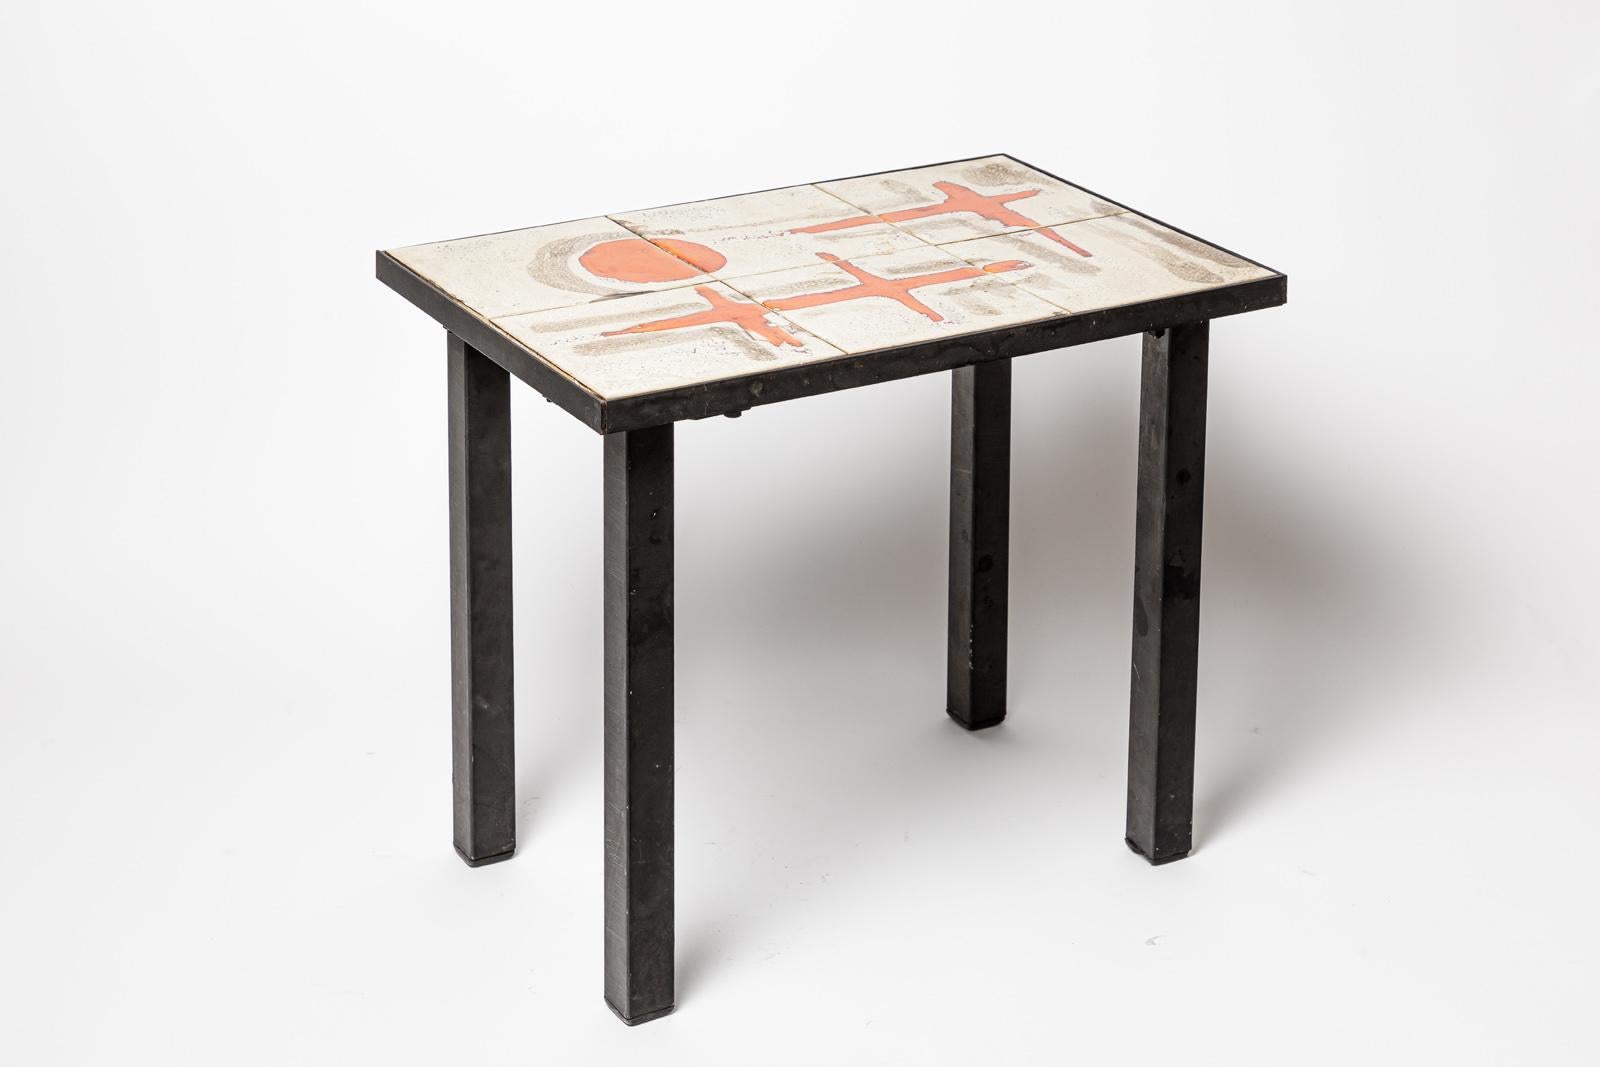 Jacques Lignier

Table basse en céramique du 20e siècle par un artiste français

Condition originale parfaite.

Hauteur 37 cm
Grand 46 cm
Profondeur 31 cm